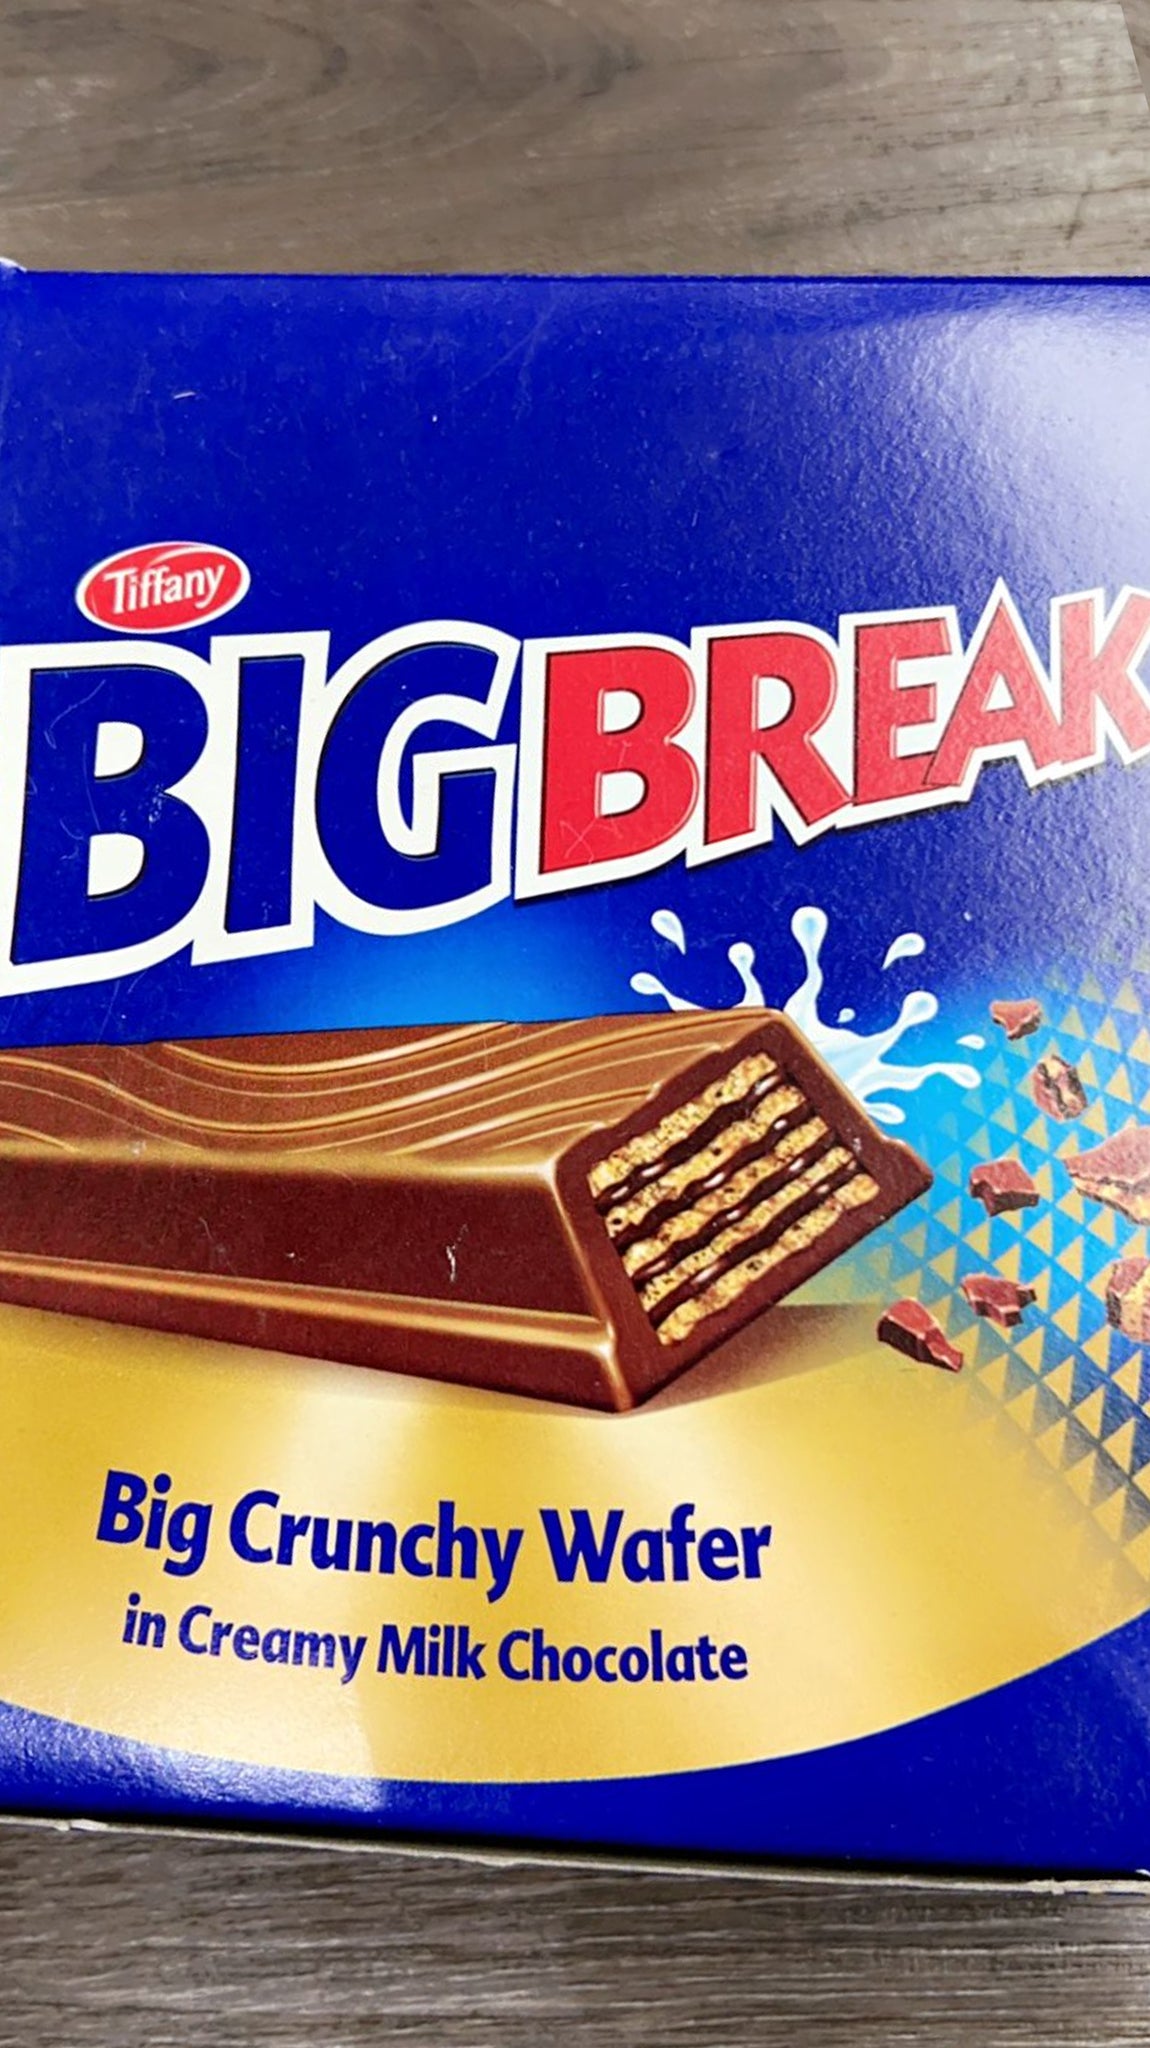 Big Break Big Crunchy Wafer